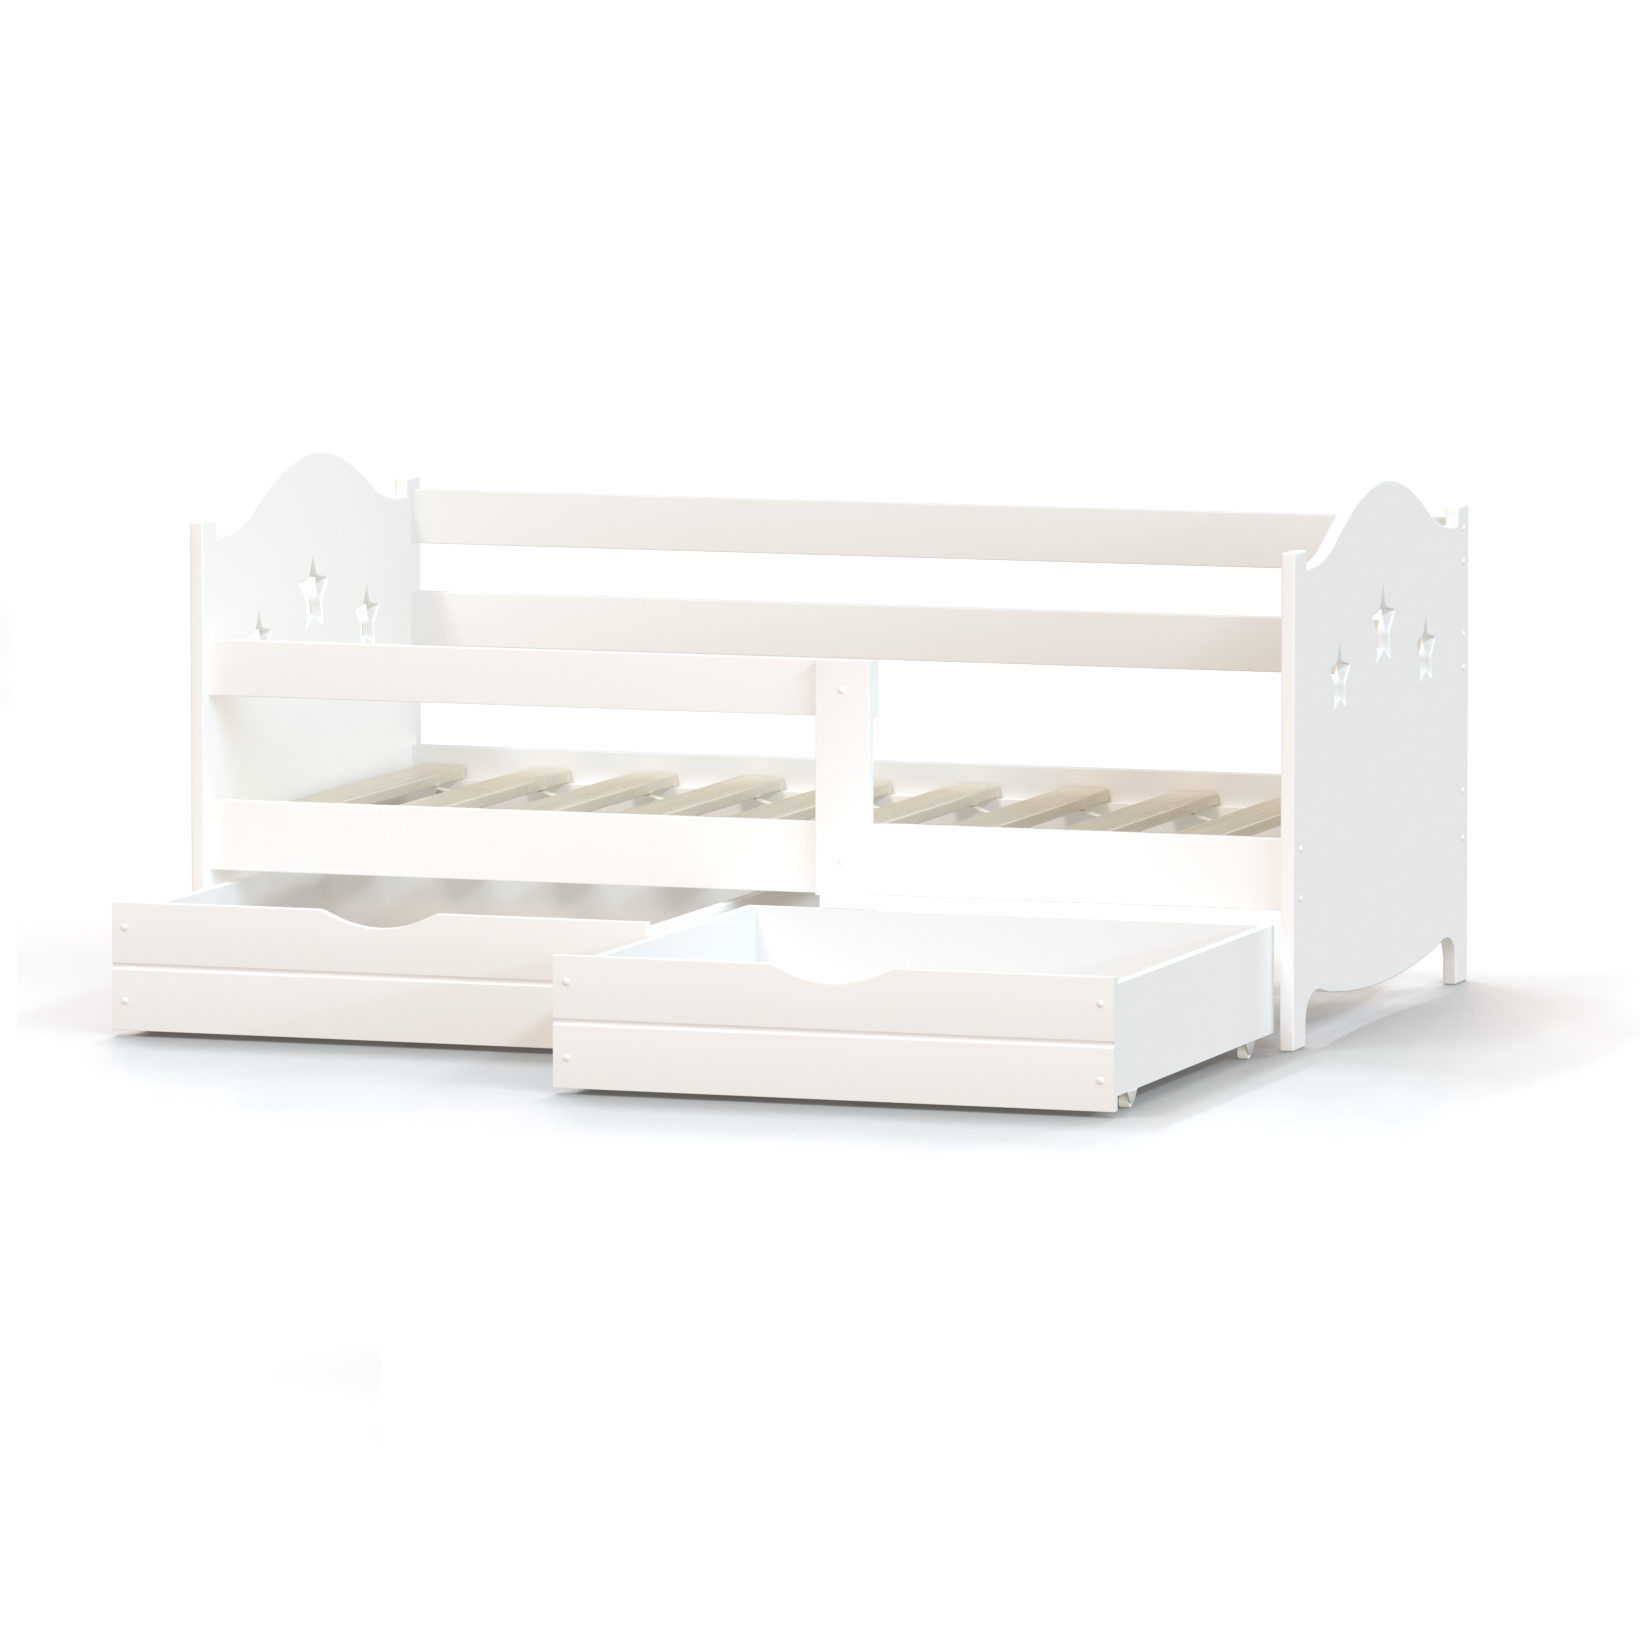 Кровать детская односпальная Roomiroom односпальная 160х80 с ящиками белая - фото 4